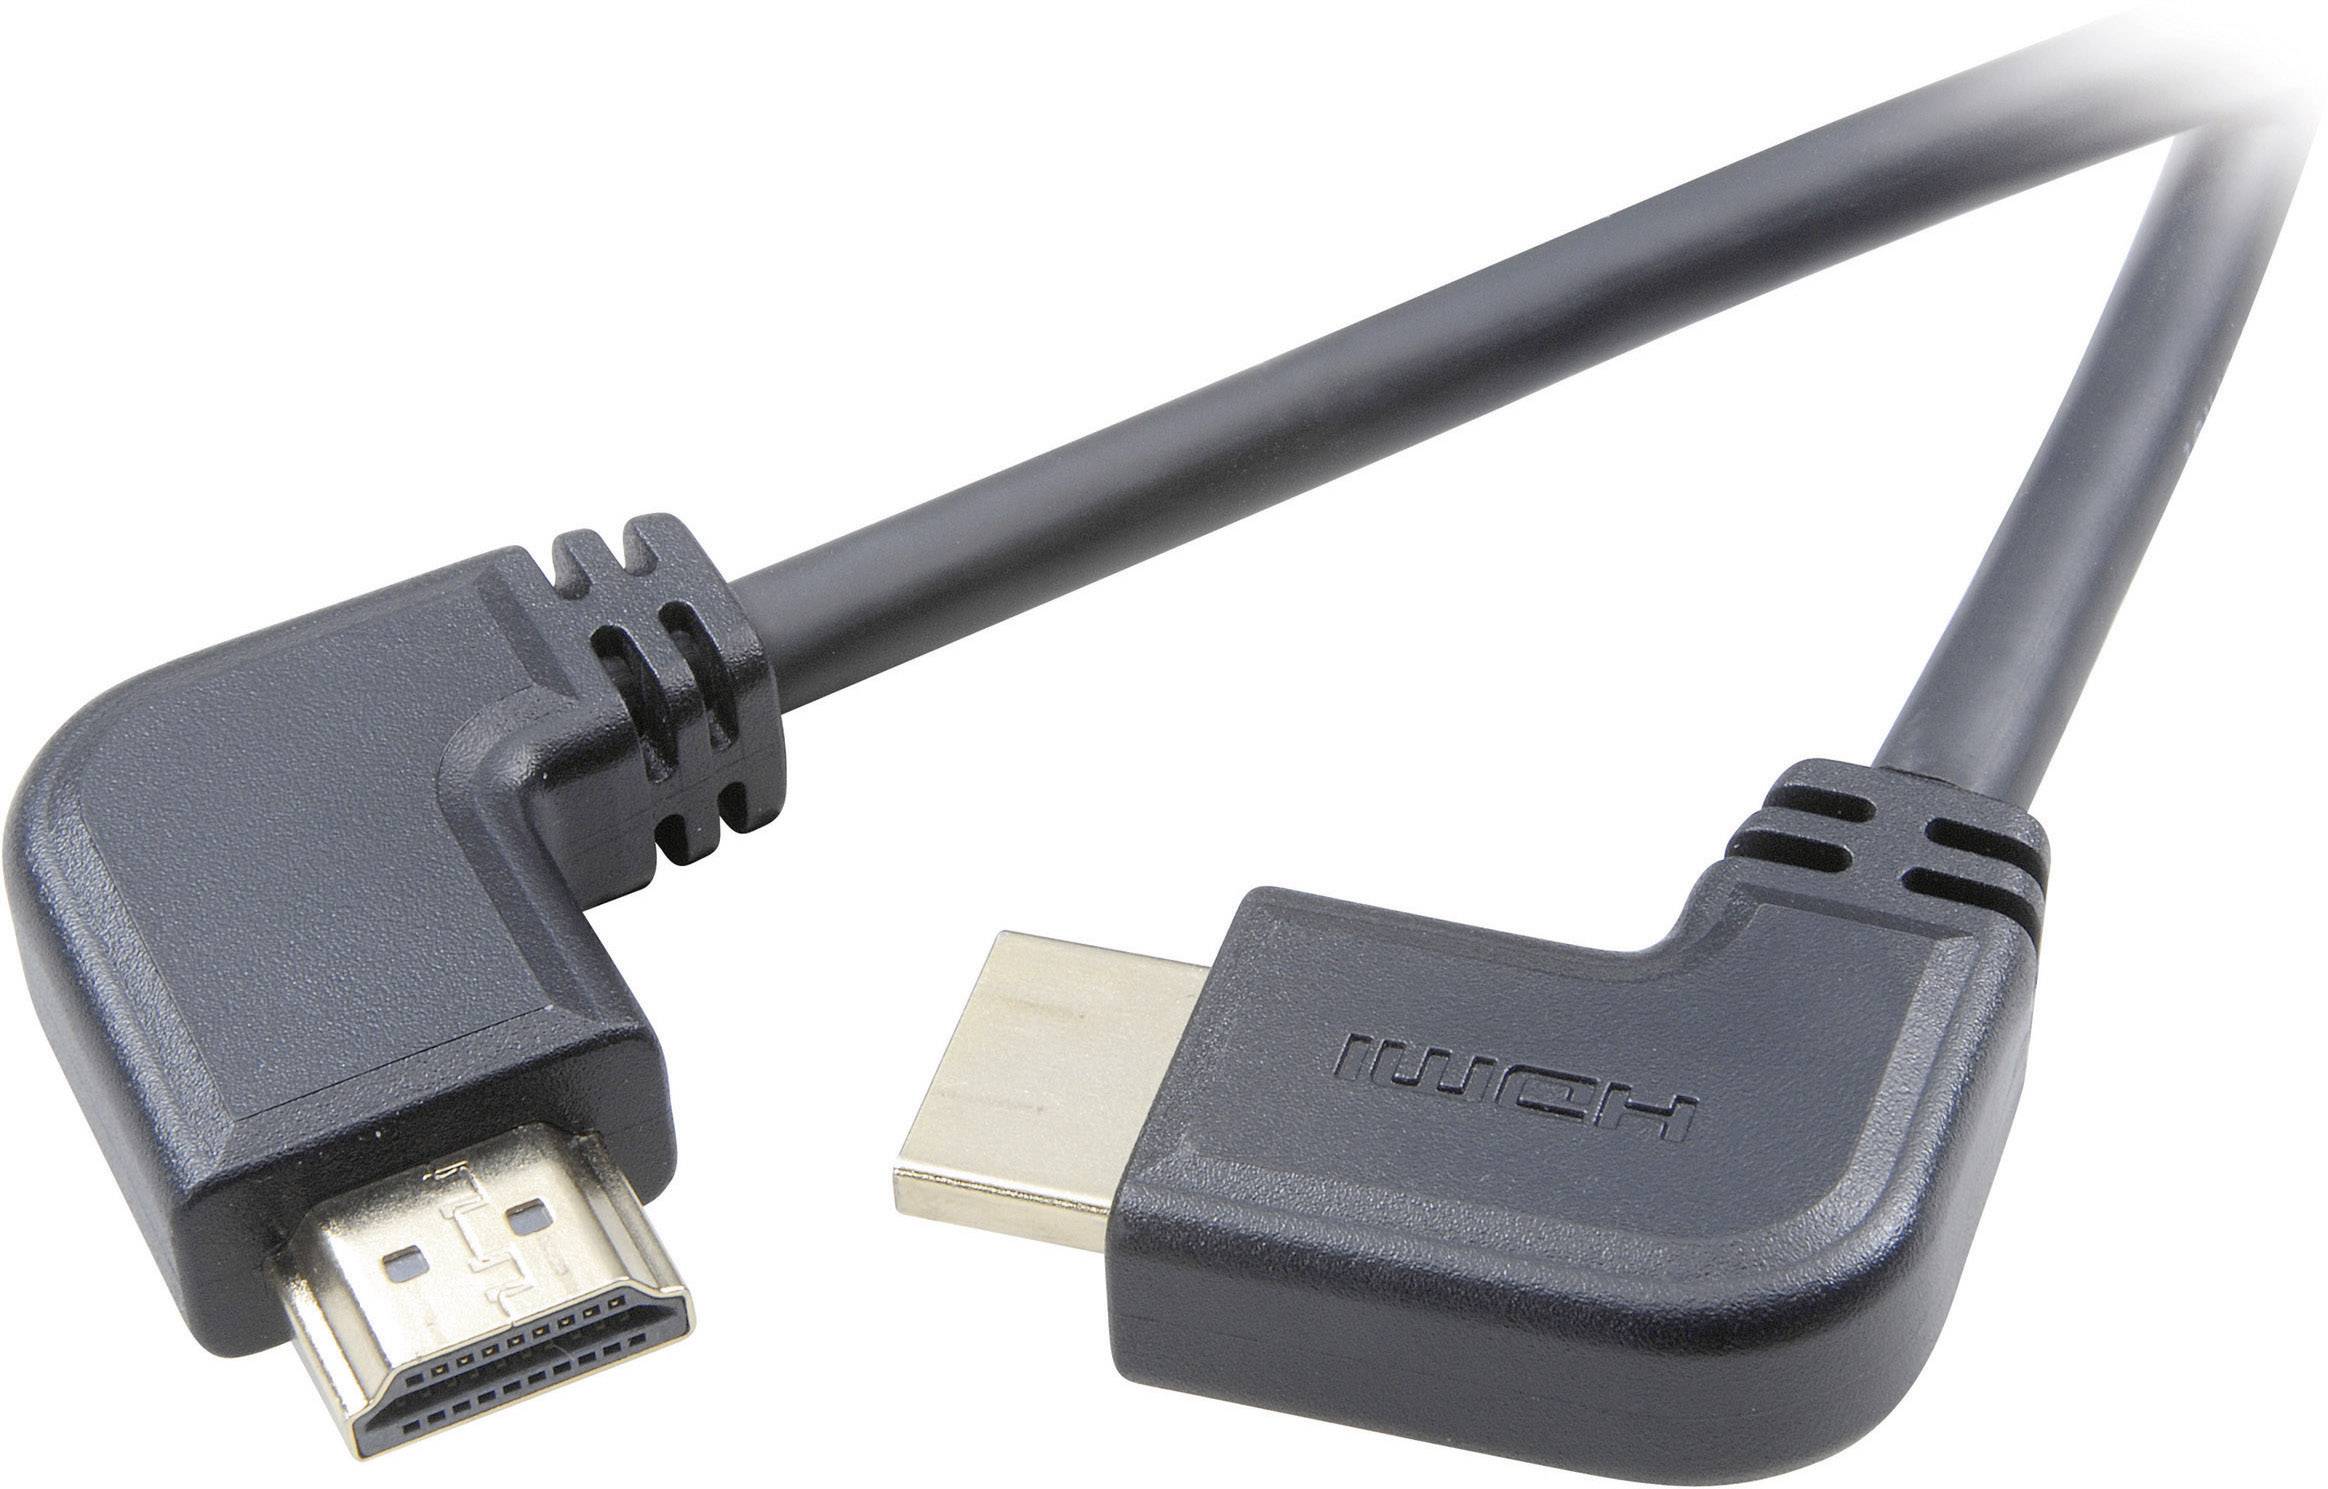 CONRAD SpeaKa Professional HDMI Anschlusskabel [1x HDMI-Stecker - 1x HDMI-Stecker] 1,5m Schwarz